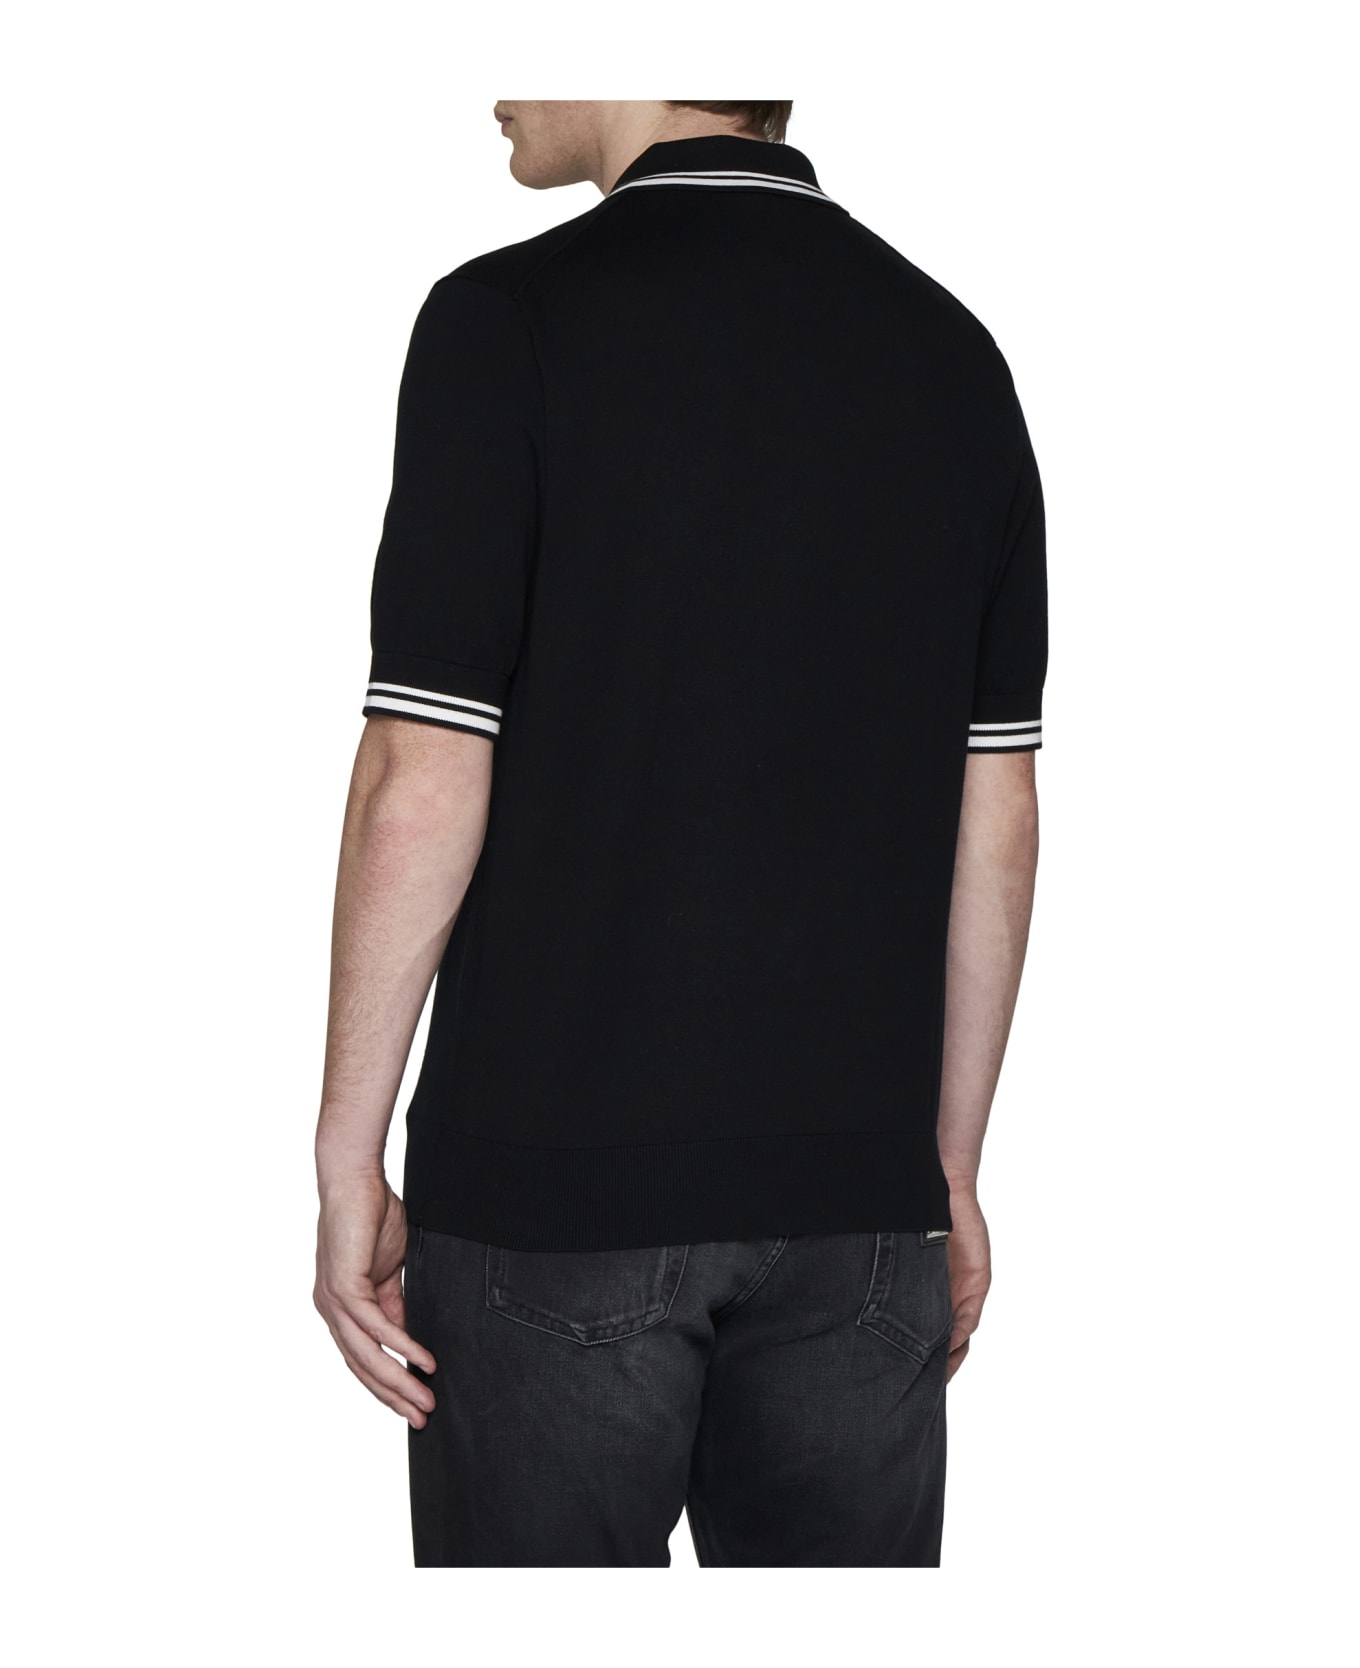 Dolce & Gabbana Polo Shirt - Black